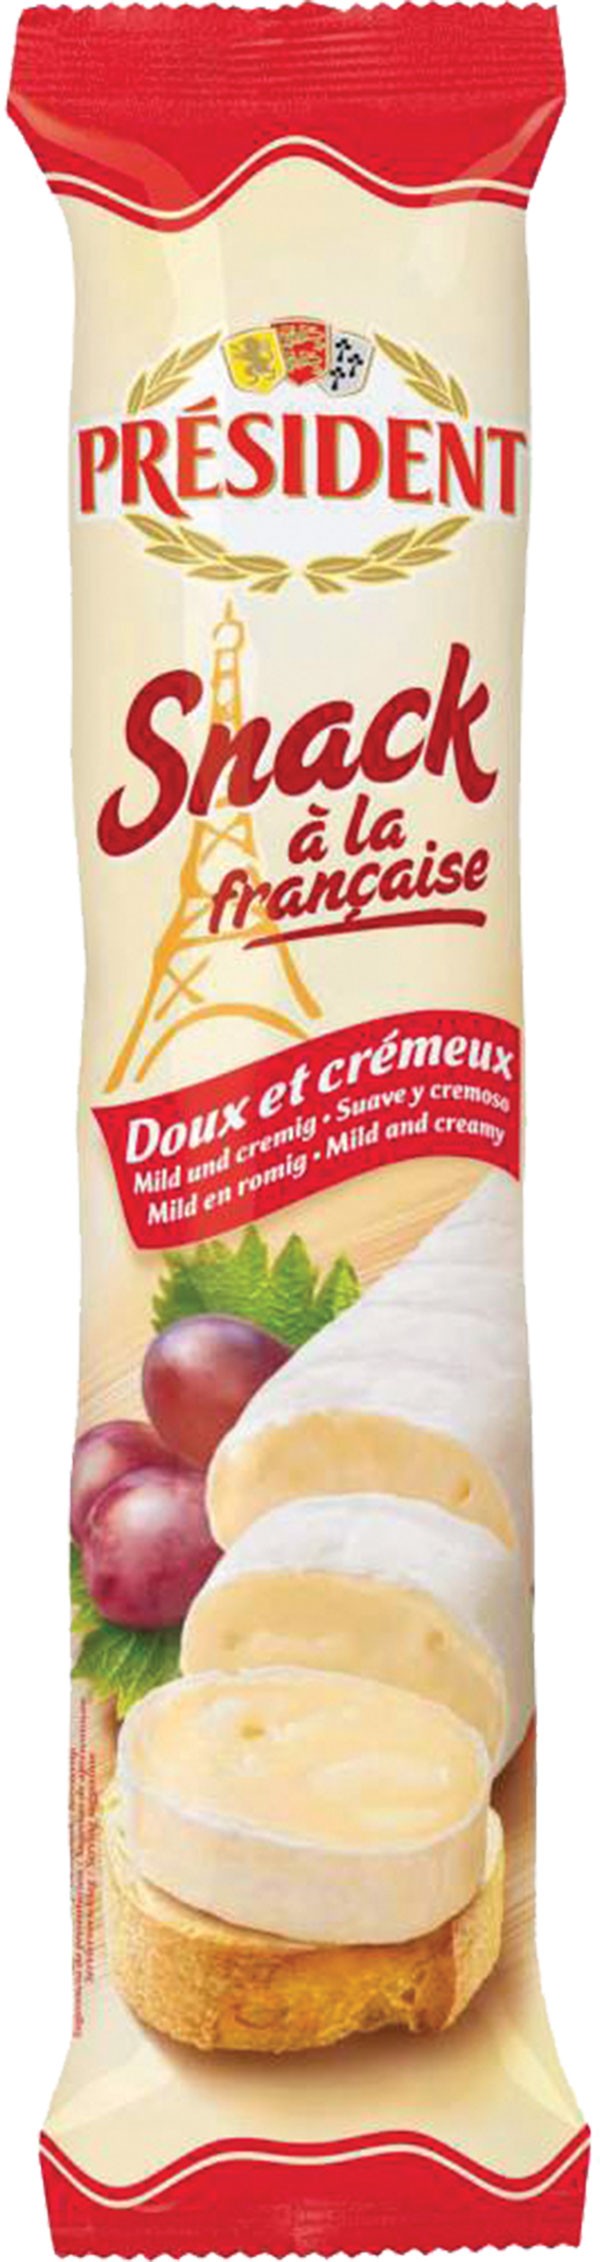 Snack à la Française au Camembert Président 180g